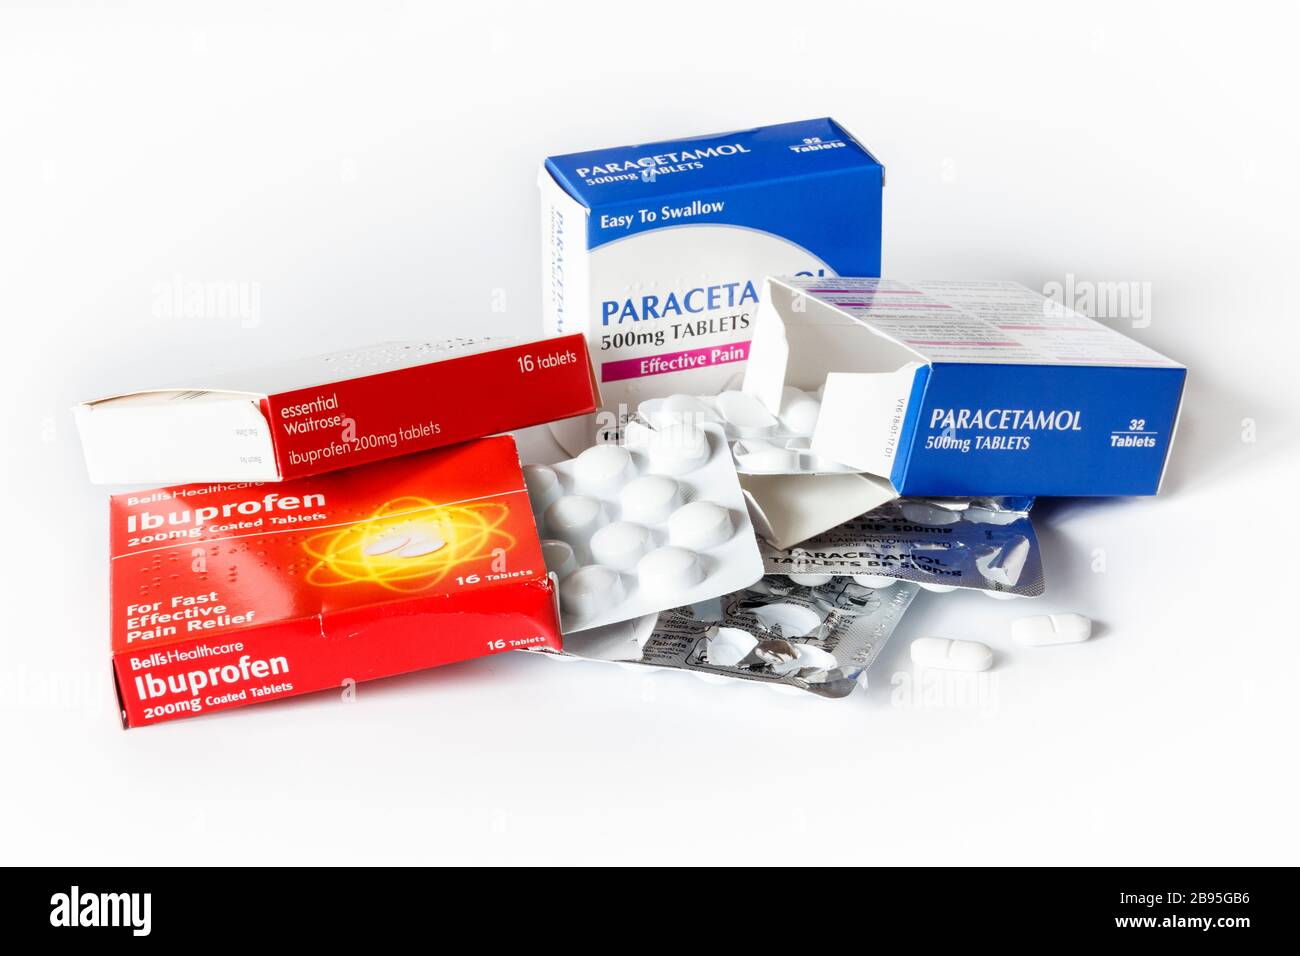 Scatole di compresse di ibuprofene e paracetamolo e blister, due compresse rimosse, su sfondo bianco Foto Stock